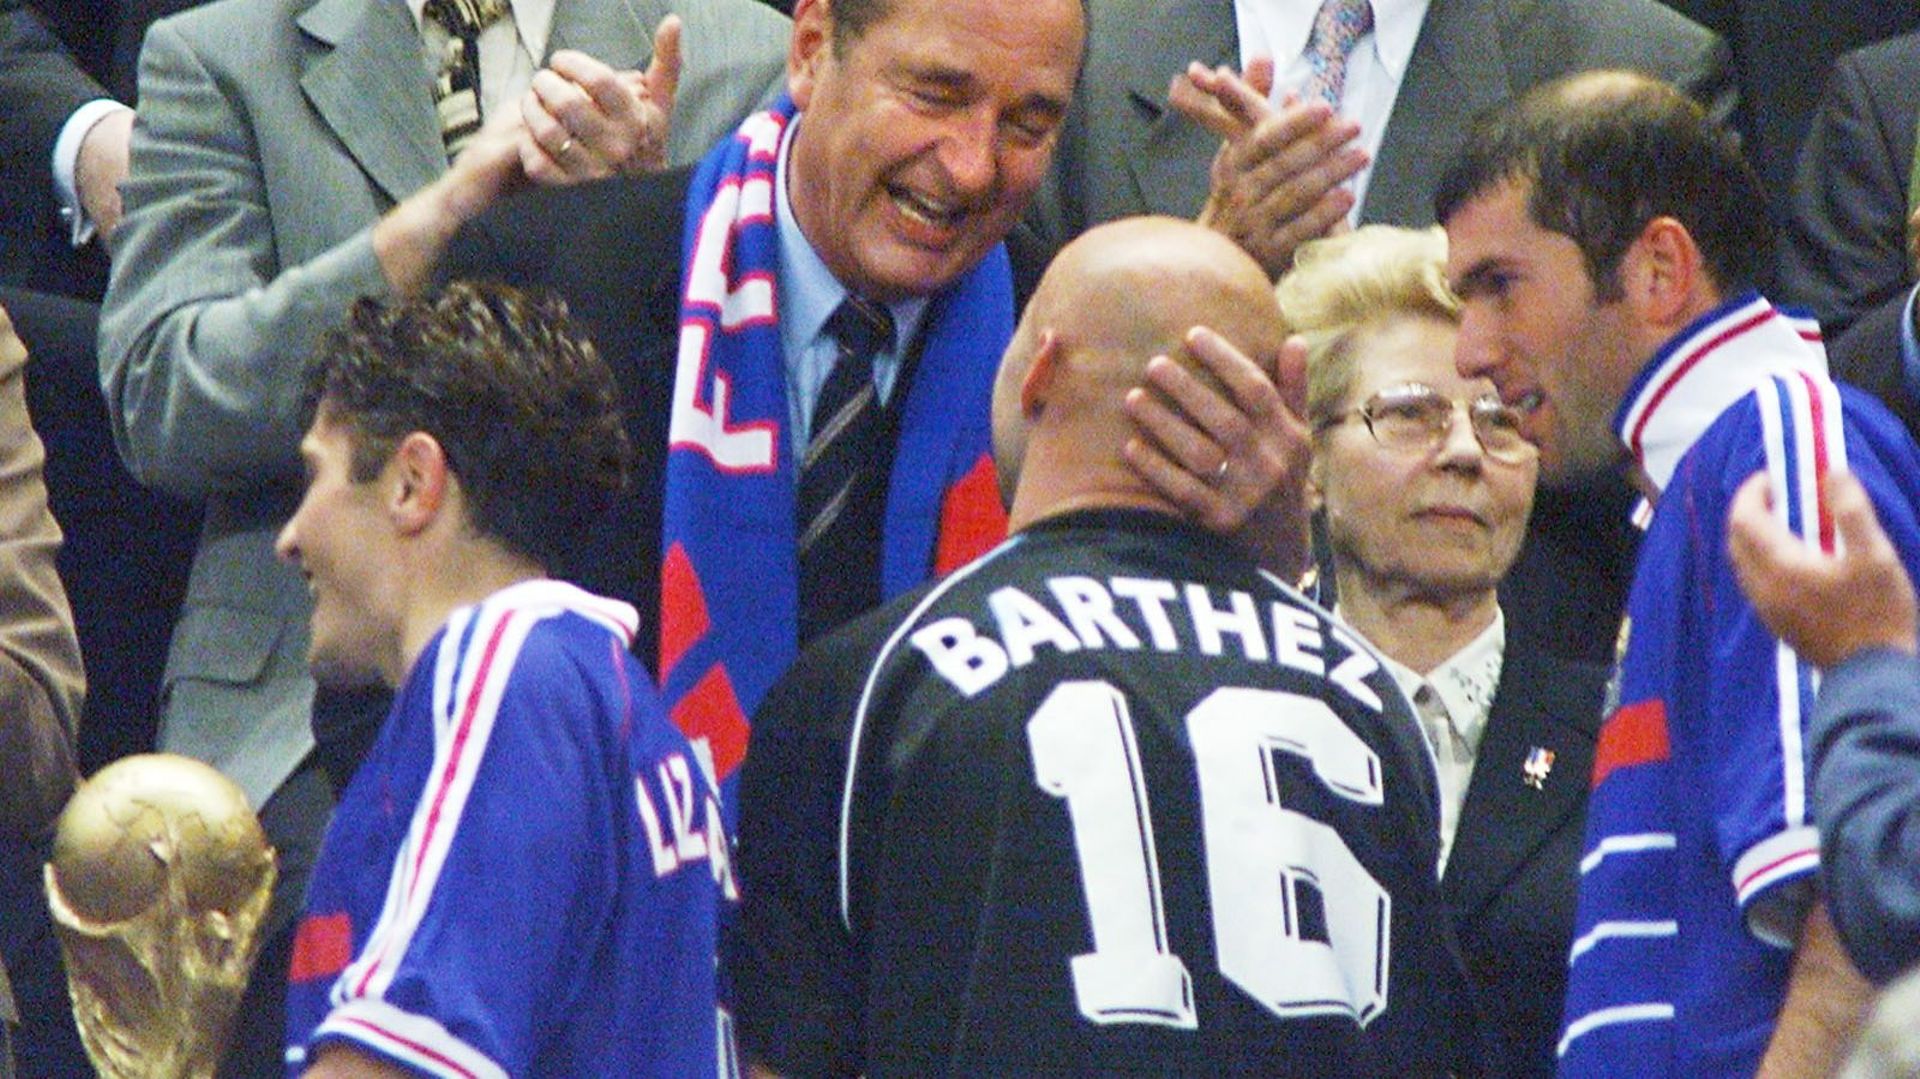 On se souvient de cette image de Jacques Chirac imitant le geste fétiche de Laurent Blanc : le bisou sur le crâne de Fabien Barthez.